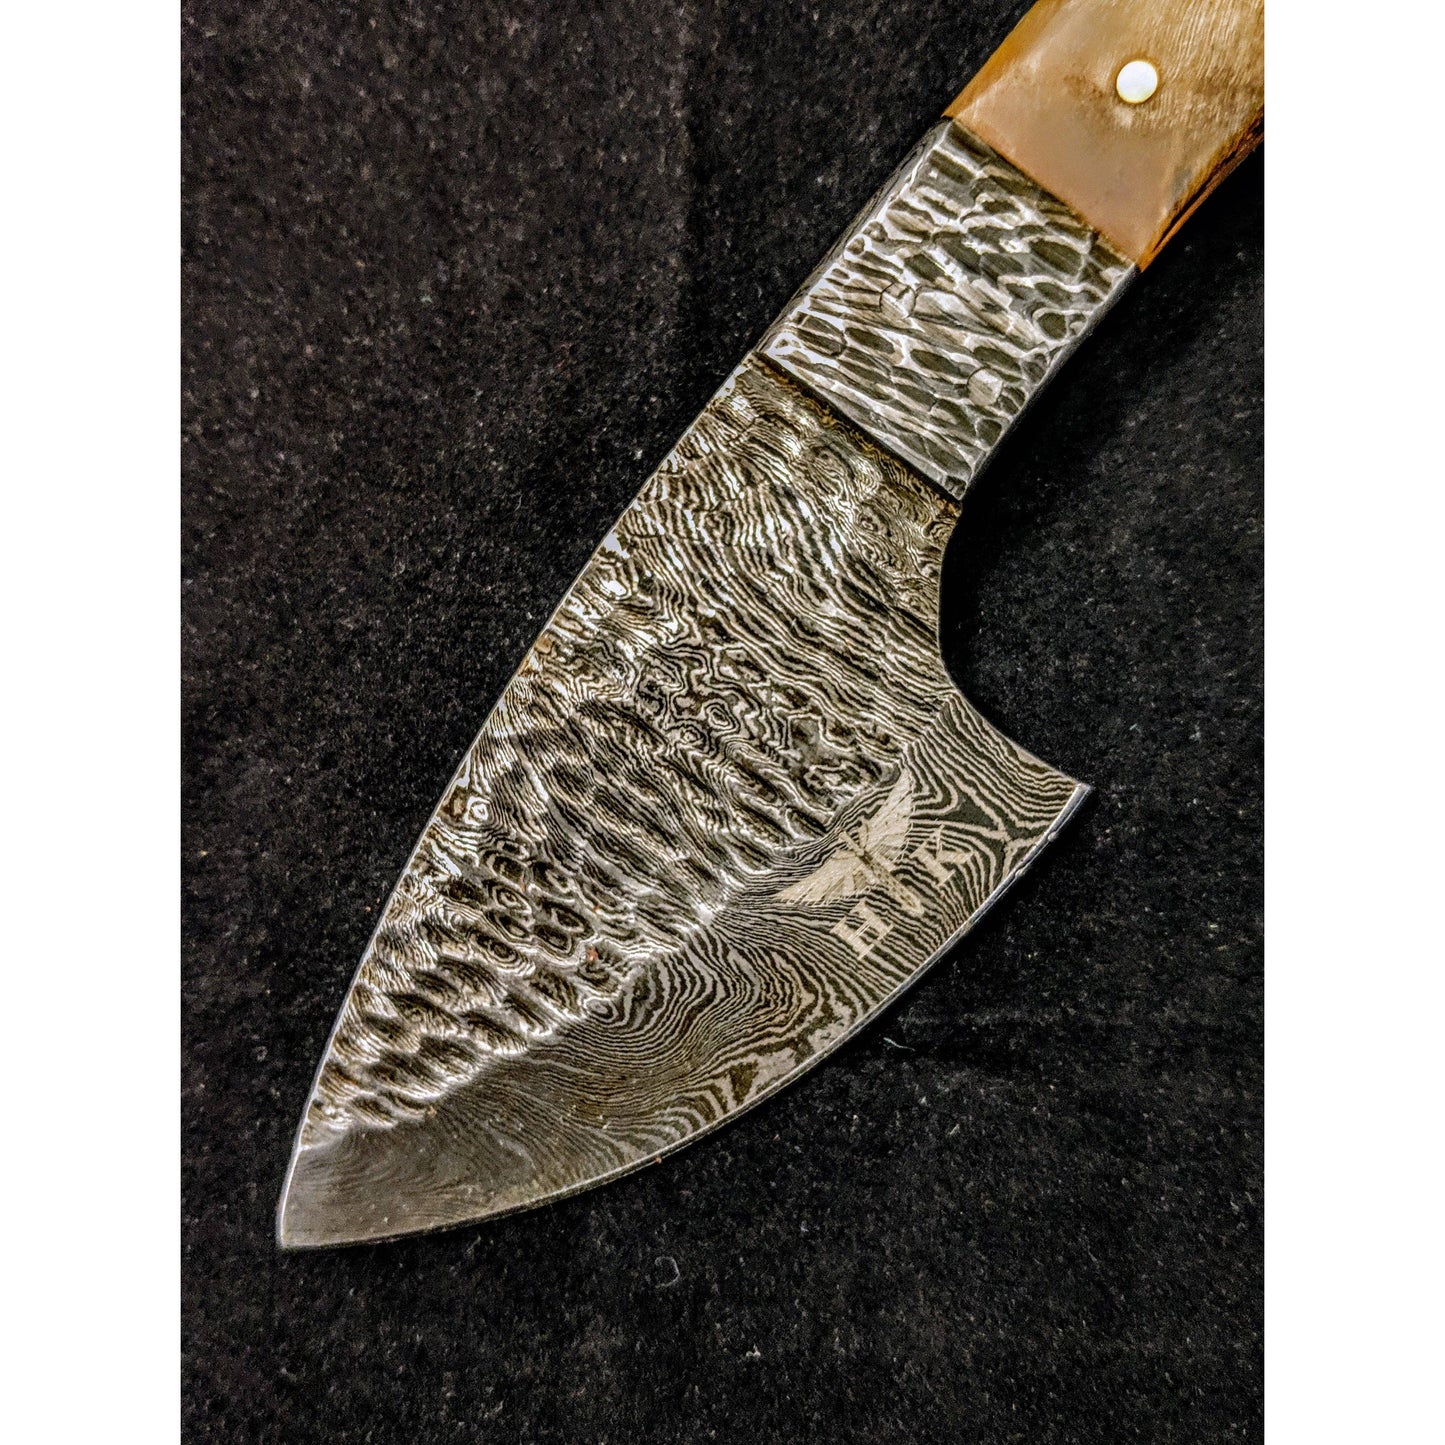 HTK  Handforged Damascus Skinner Knife